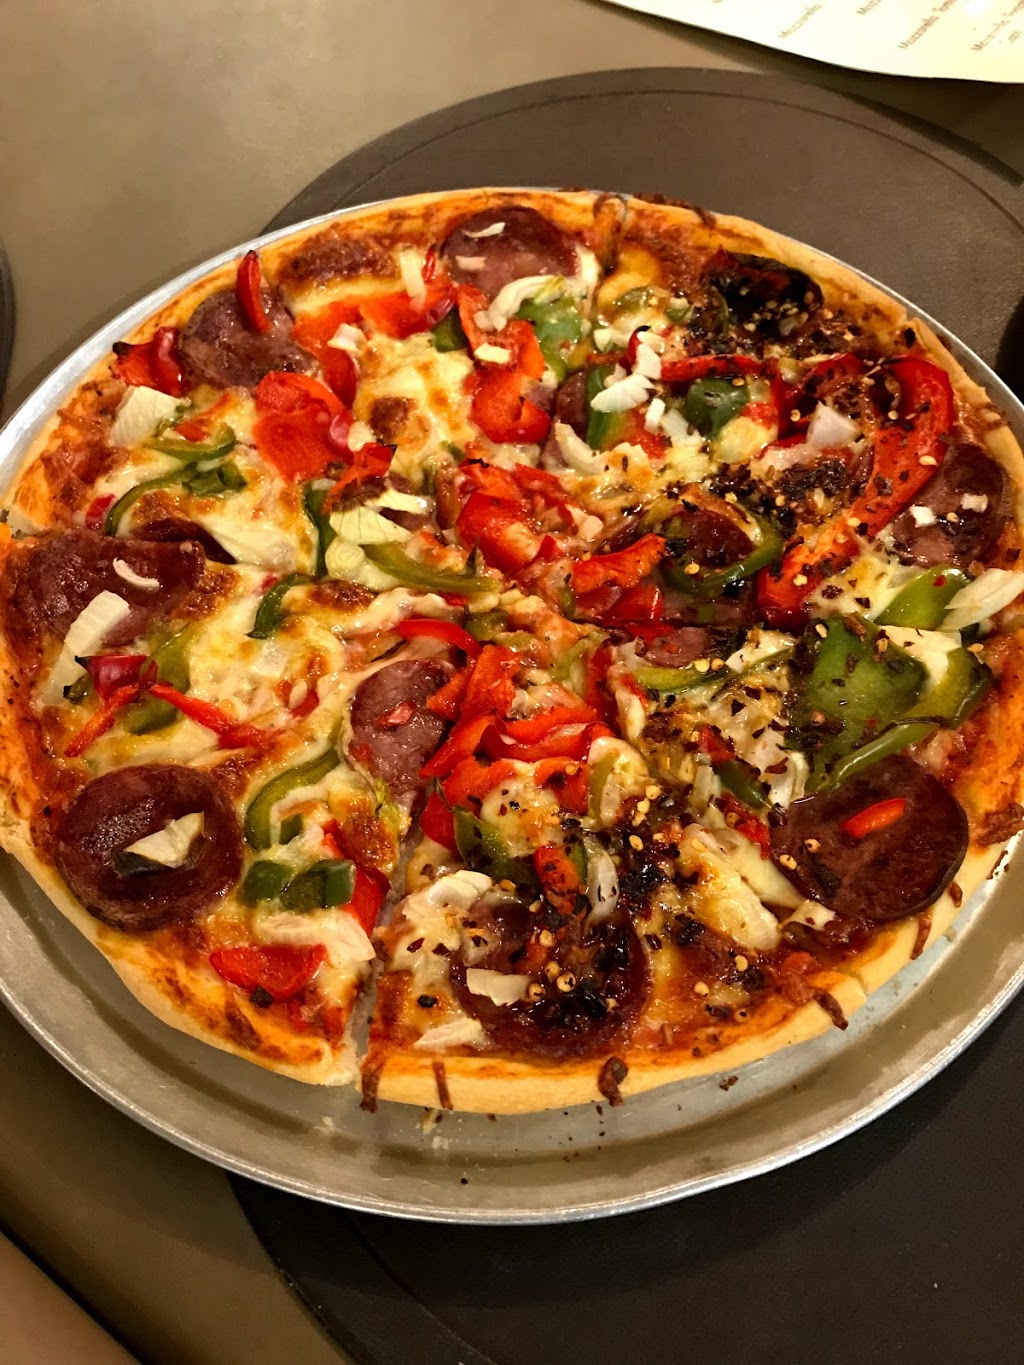 Totos Pizzeria | meal takeaway | 176 Daws Rd, Melrose Park SA 5039, Australia | 0882775955 OR +61 8 8277 5955